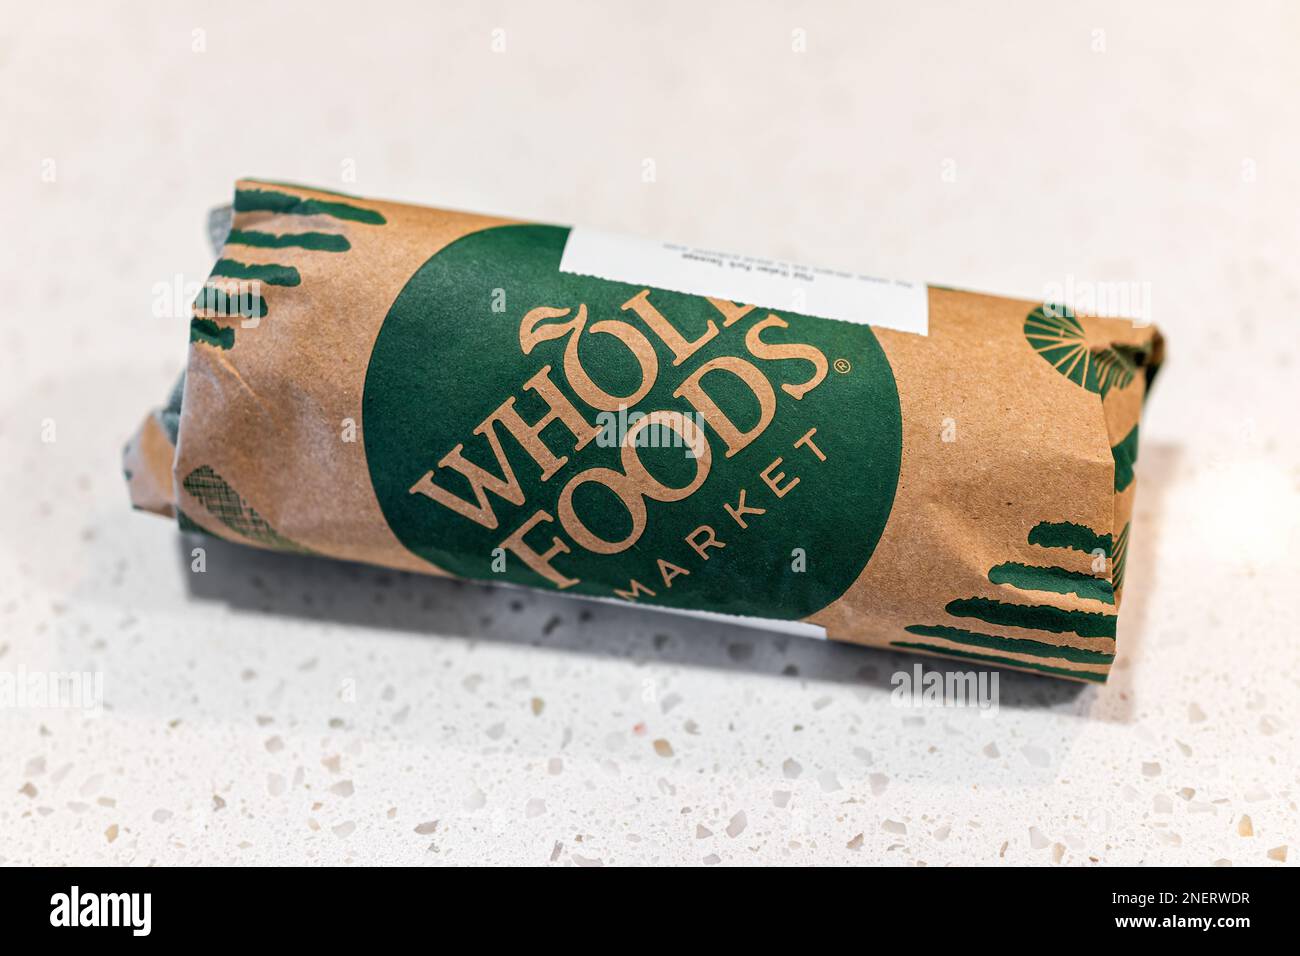 Neapel, USA - 11. Mai 2022: Whole Foods Market Grocery Store Metzger Packaging Nahaufnahme des Schildertextes auf der Papierverpackung für Fleisch-Rindfleisch Stockfoto